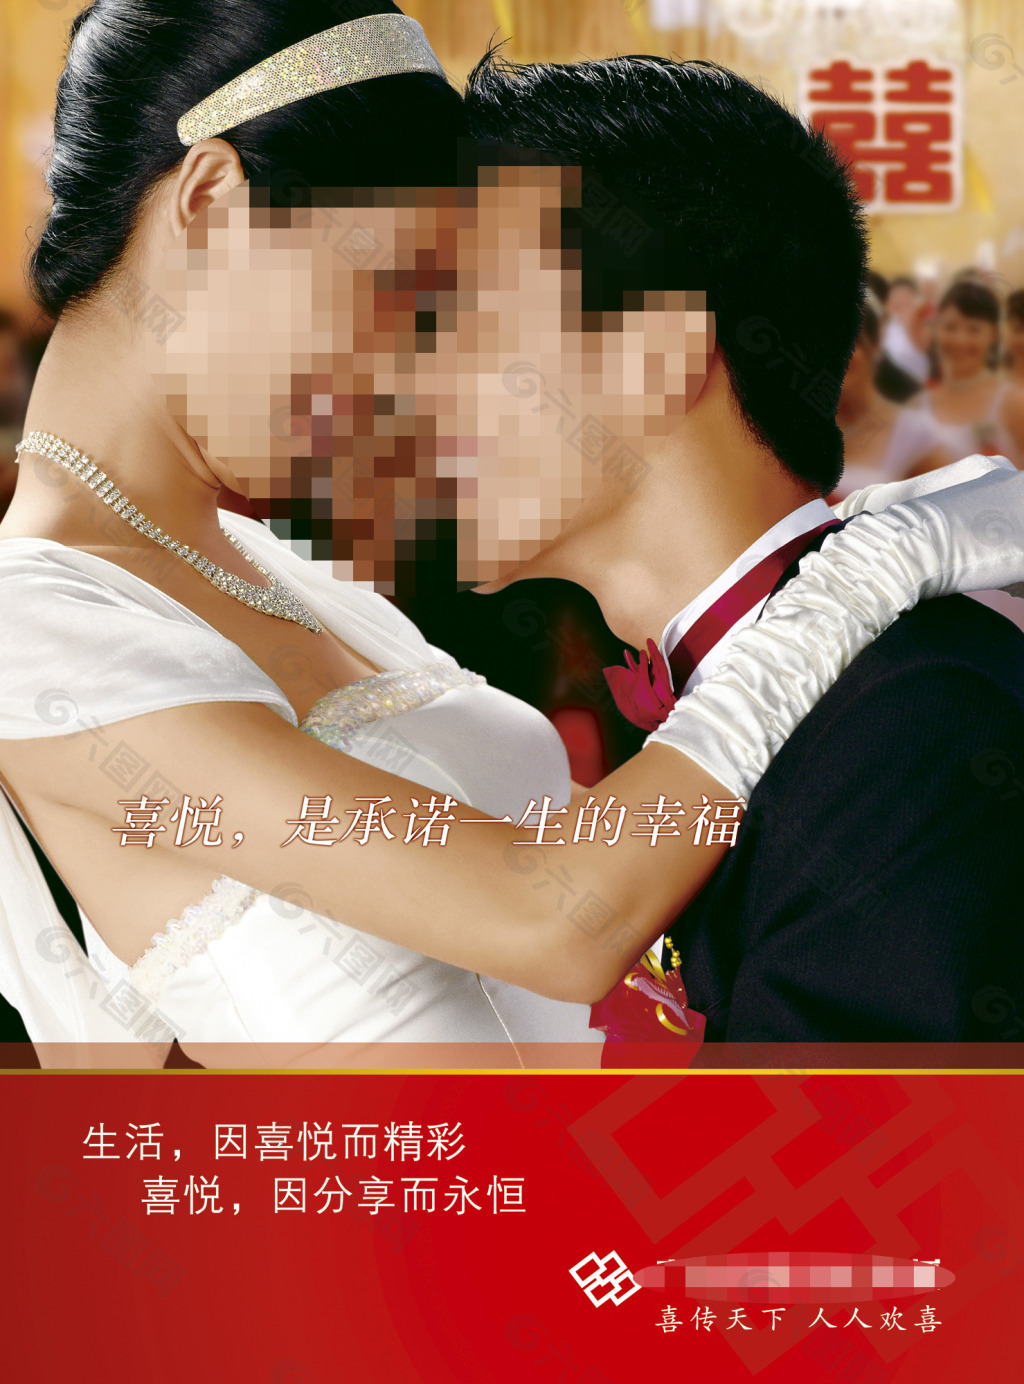 广东双喜文化传播婚庆海报